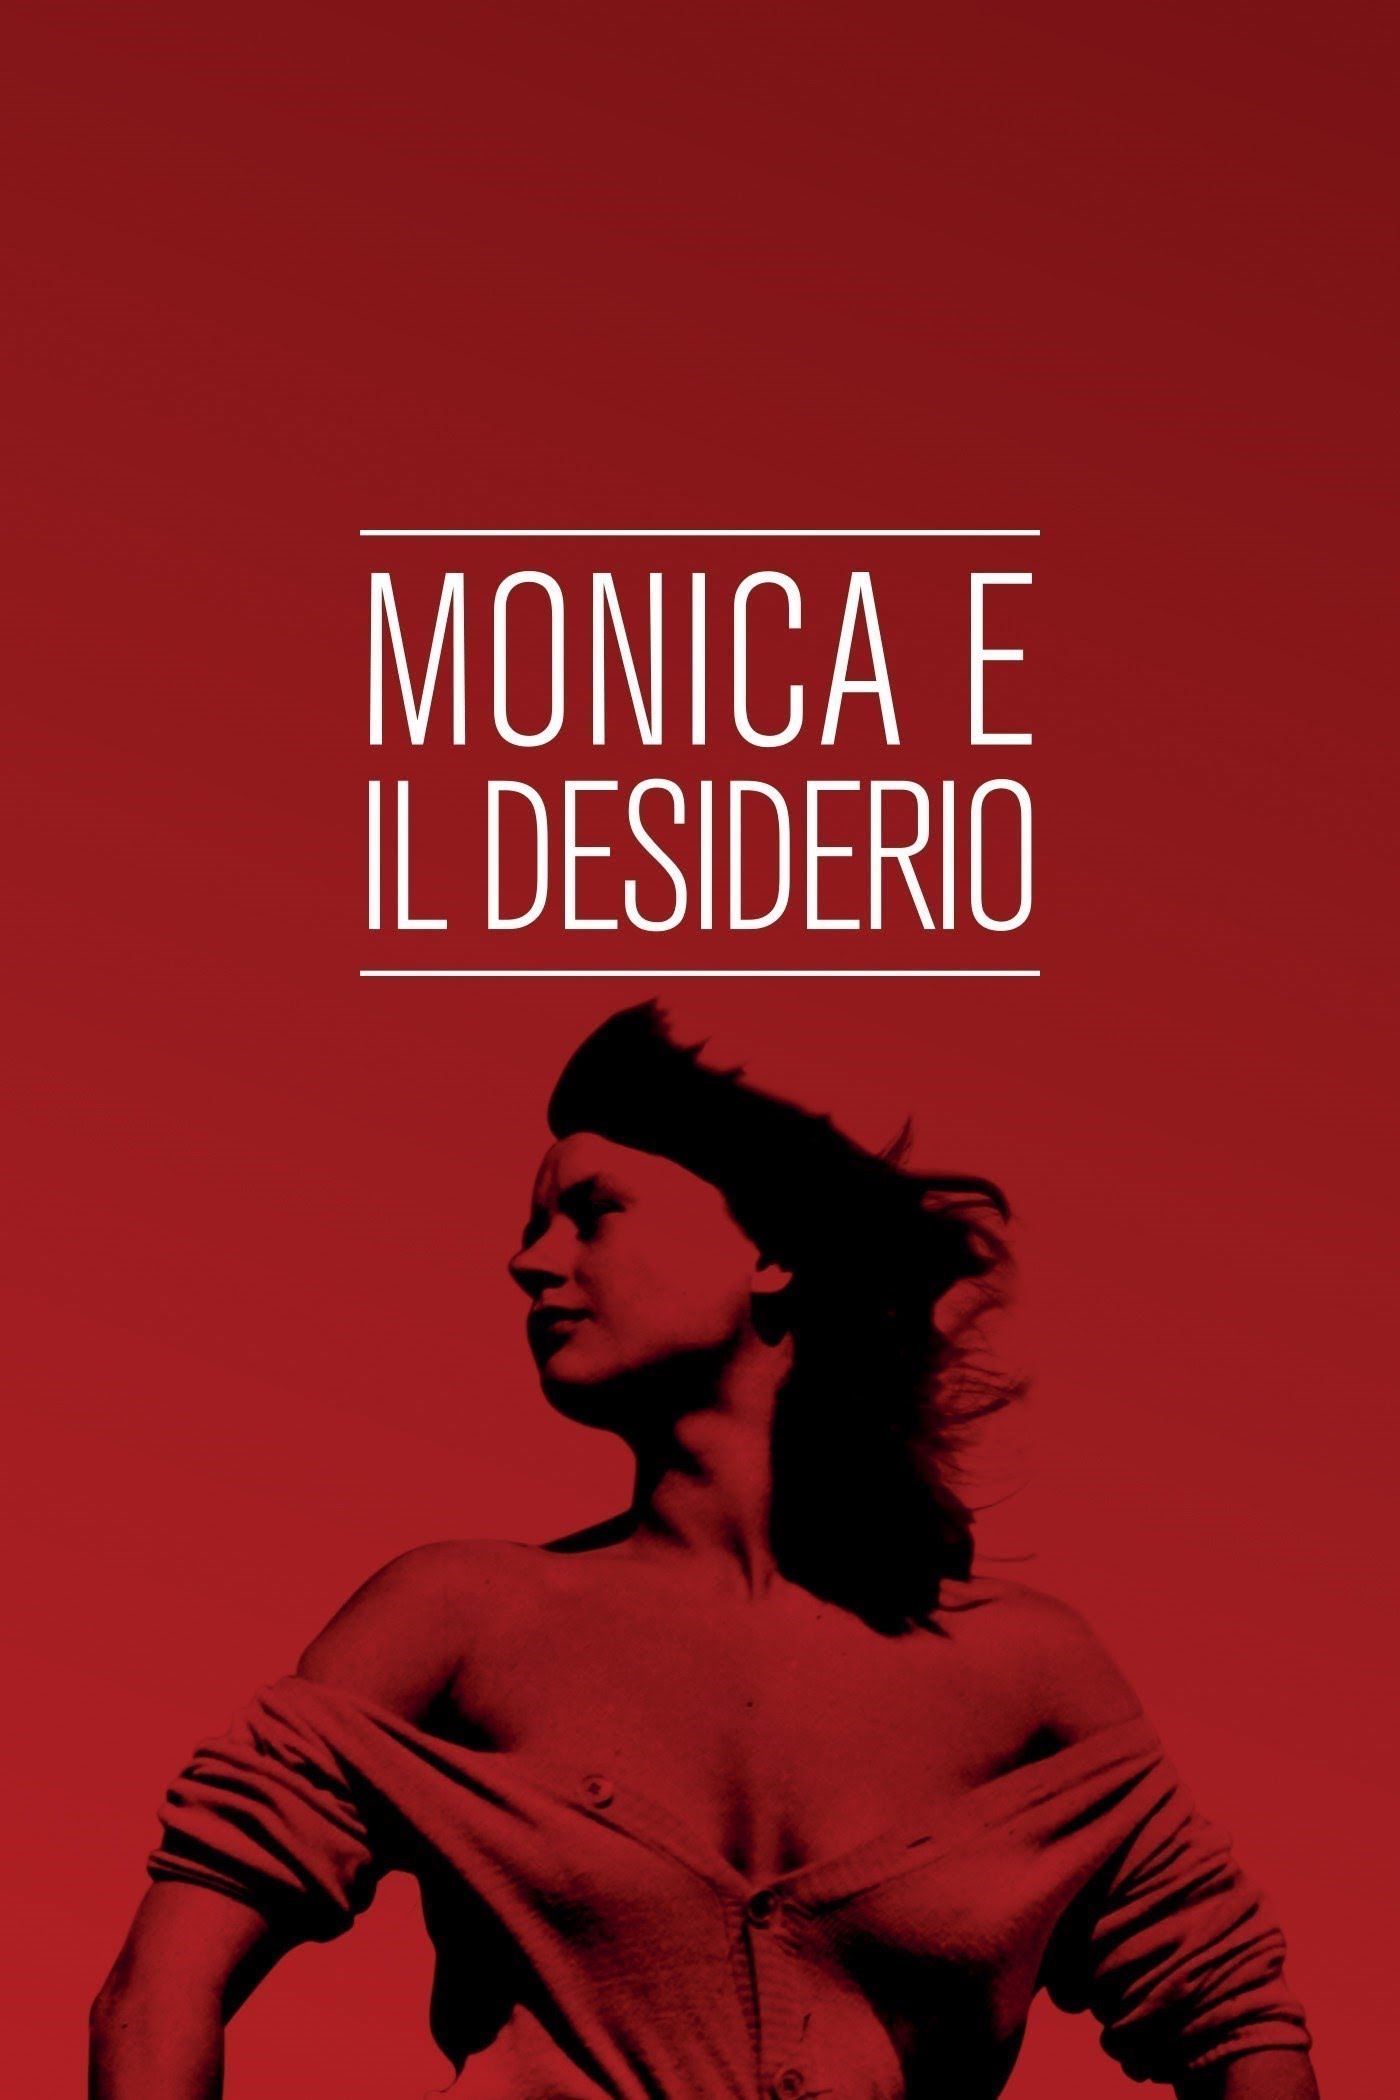 Monica e il desiderio [B/N] [HD] (1953)